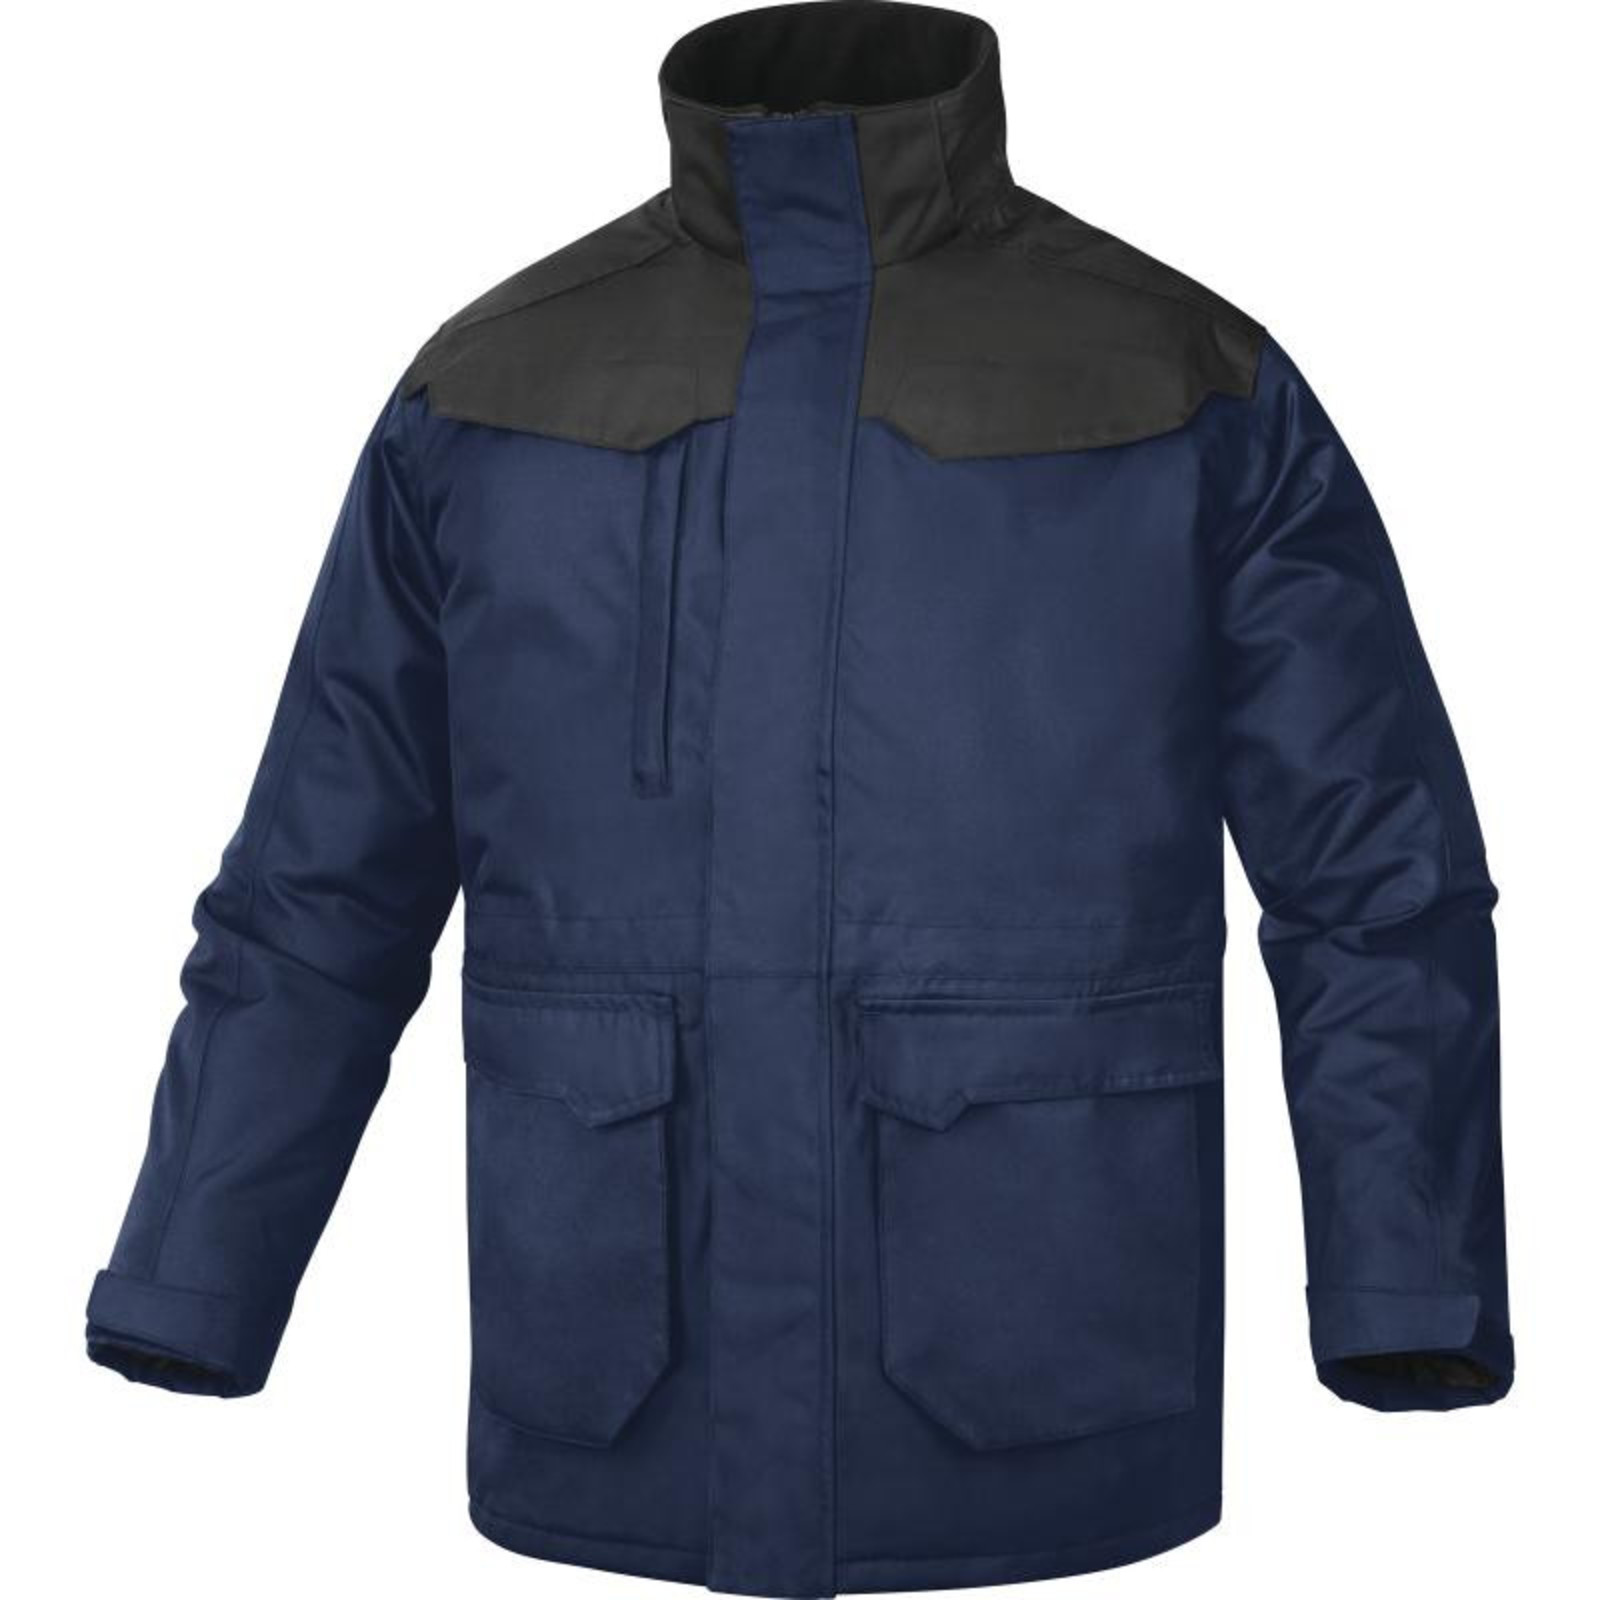 Zimná bunda Delta Plus Carson2 - veľkosť: S, farba: námornícka modrá/čierna